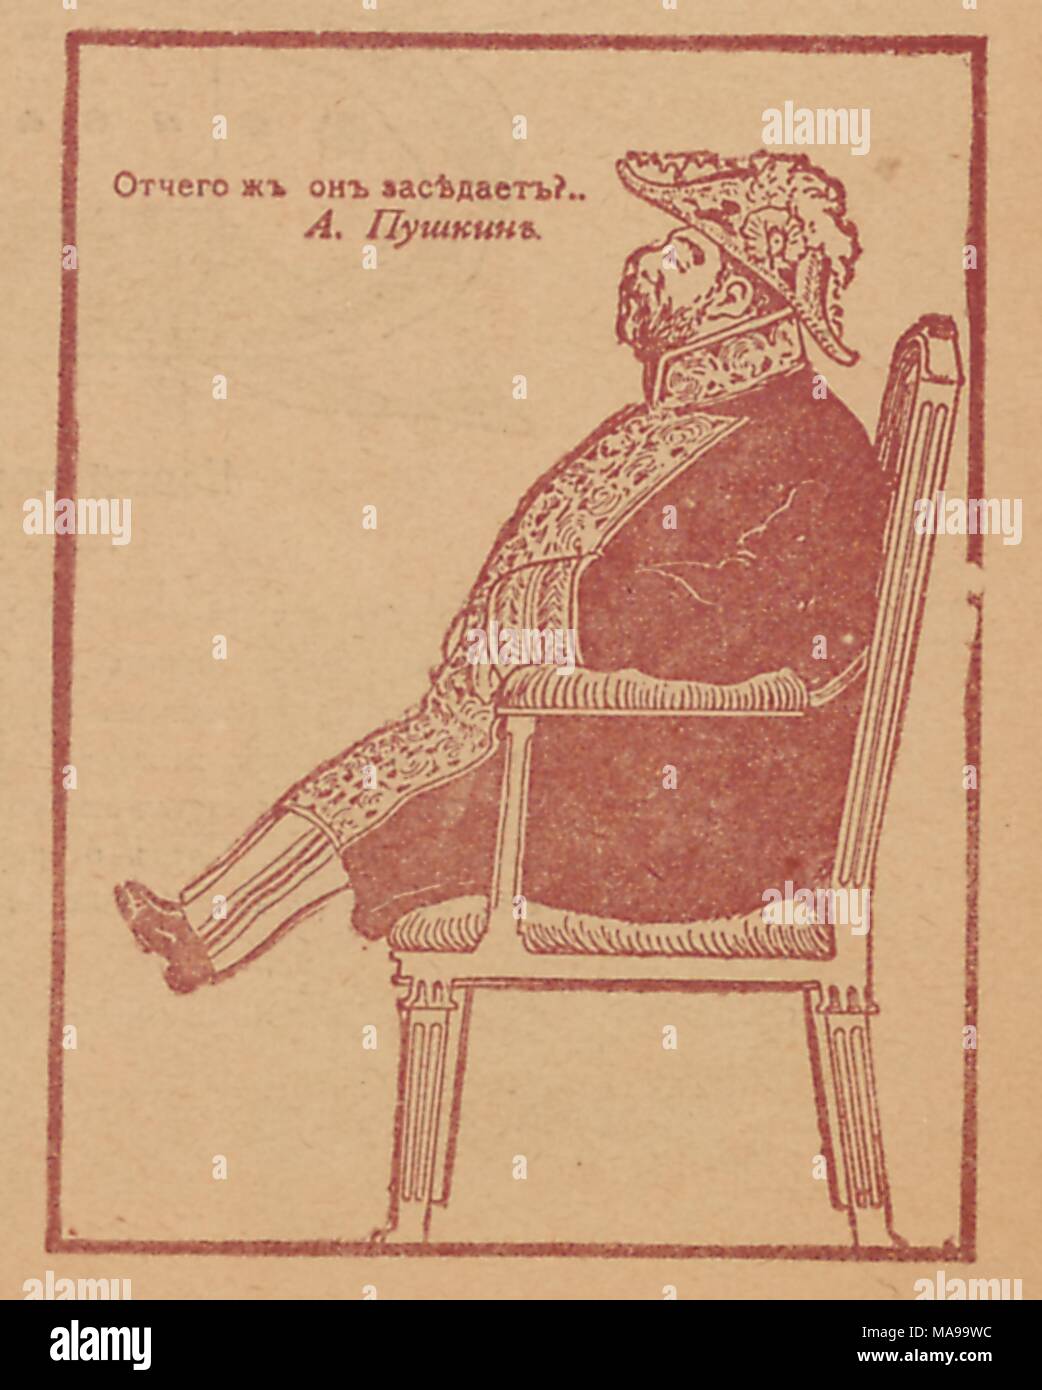 Caricature de la revue satirique russe Signaly (signaux) représentant un homme dans un costume militaire assis sur une chaise, avec texte à lire 'Pourquoi est-il assis ?, 1905).', une ligne d'un épigramme écrit par Alexandre Pouchkine. () Banque D'Images